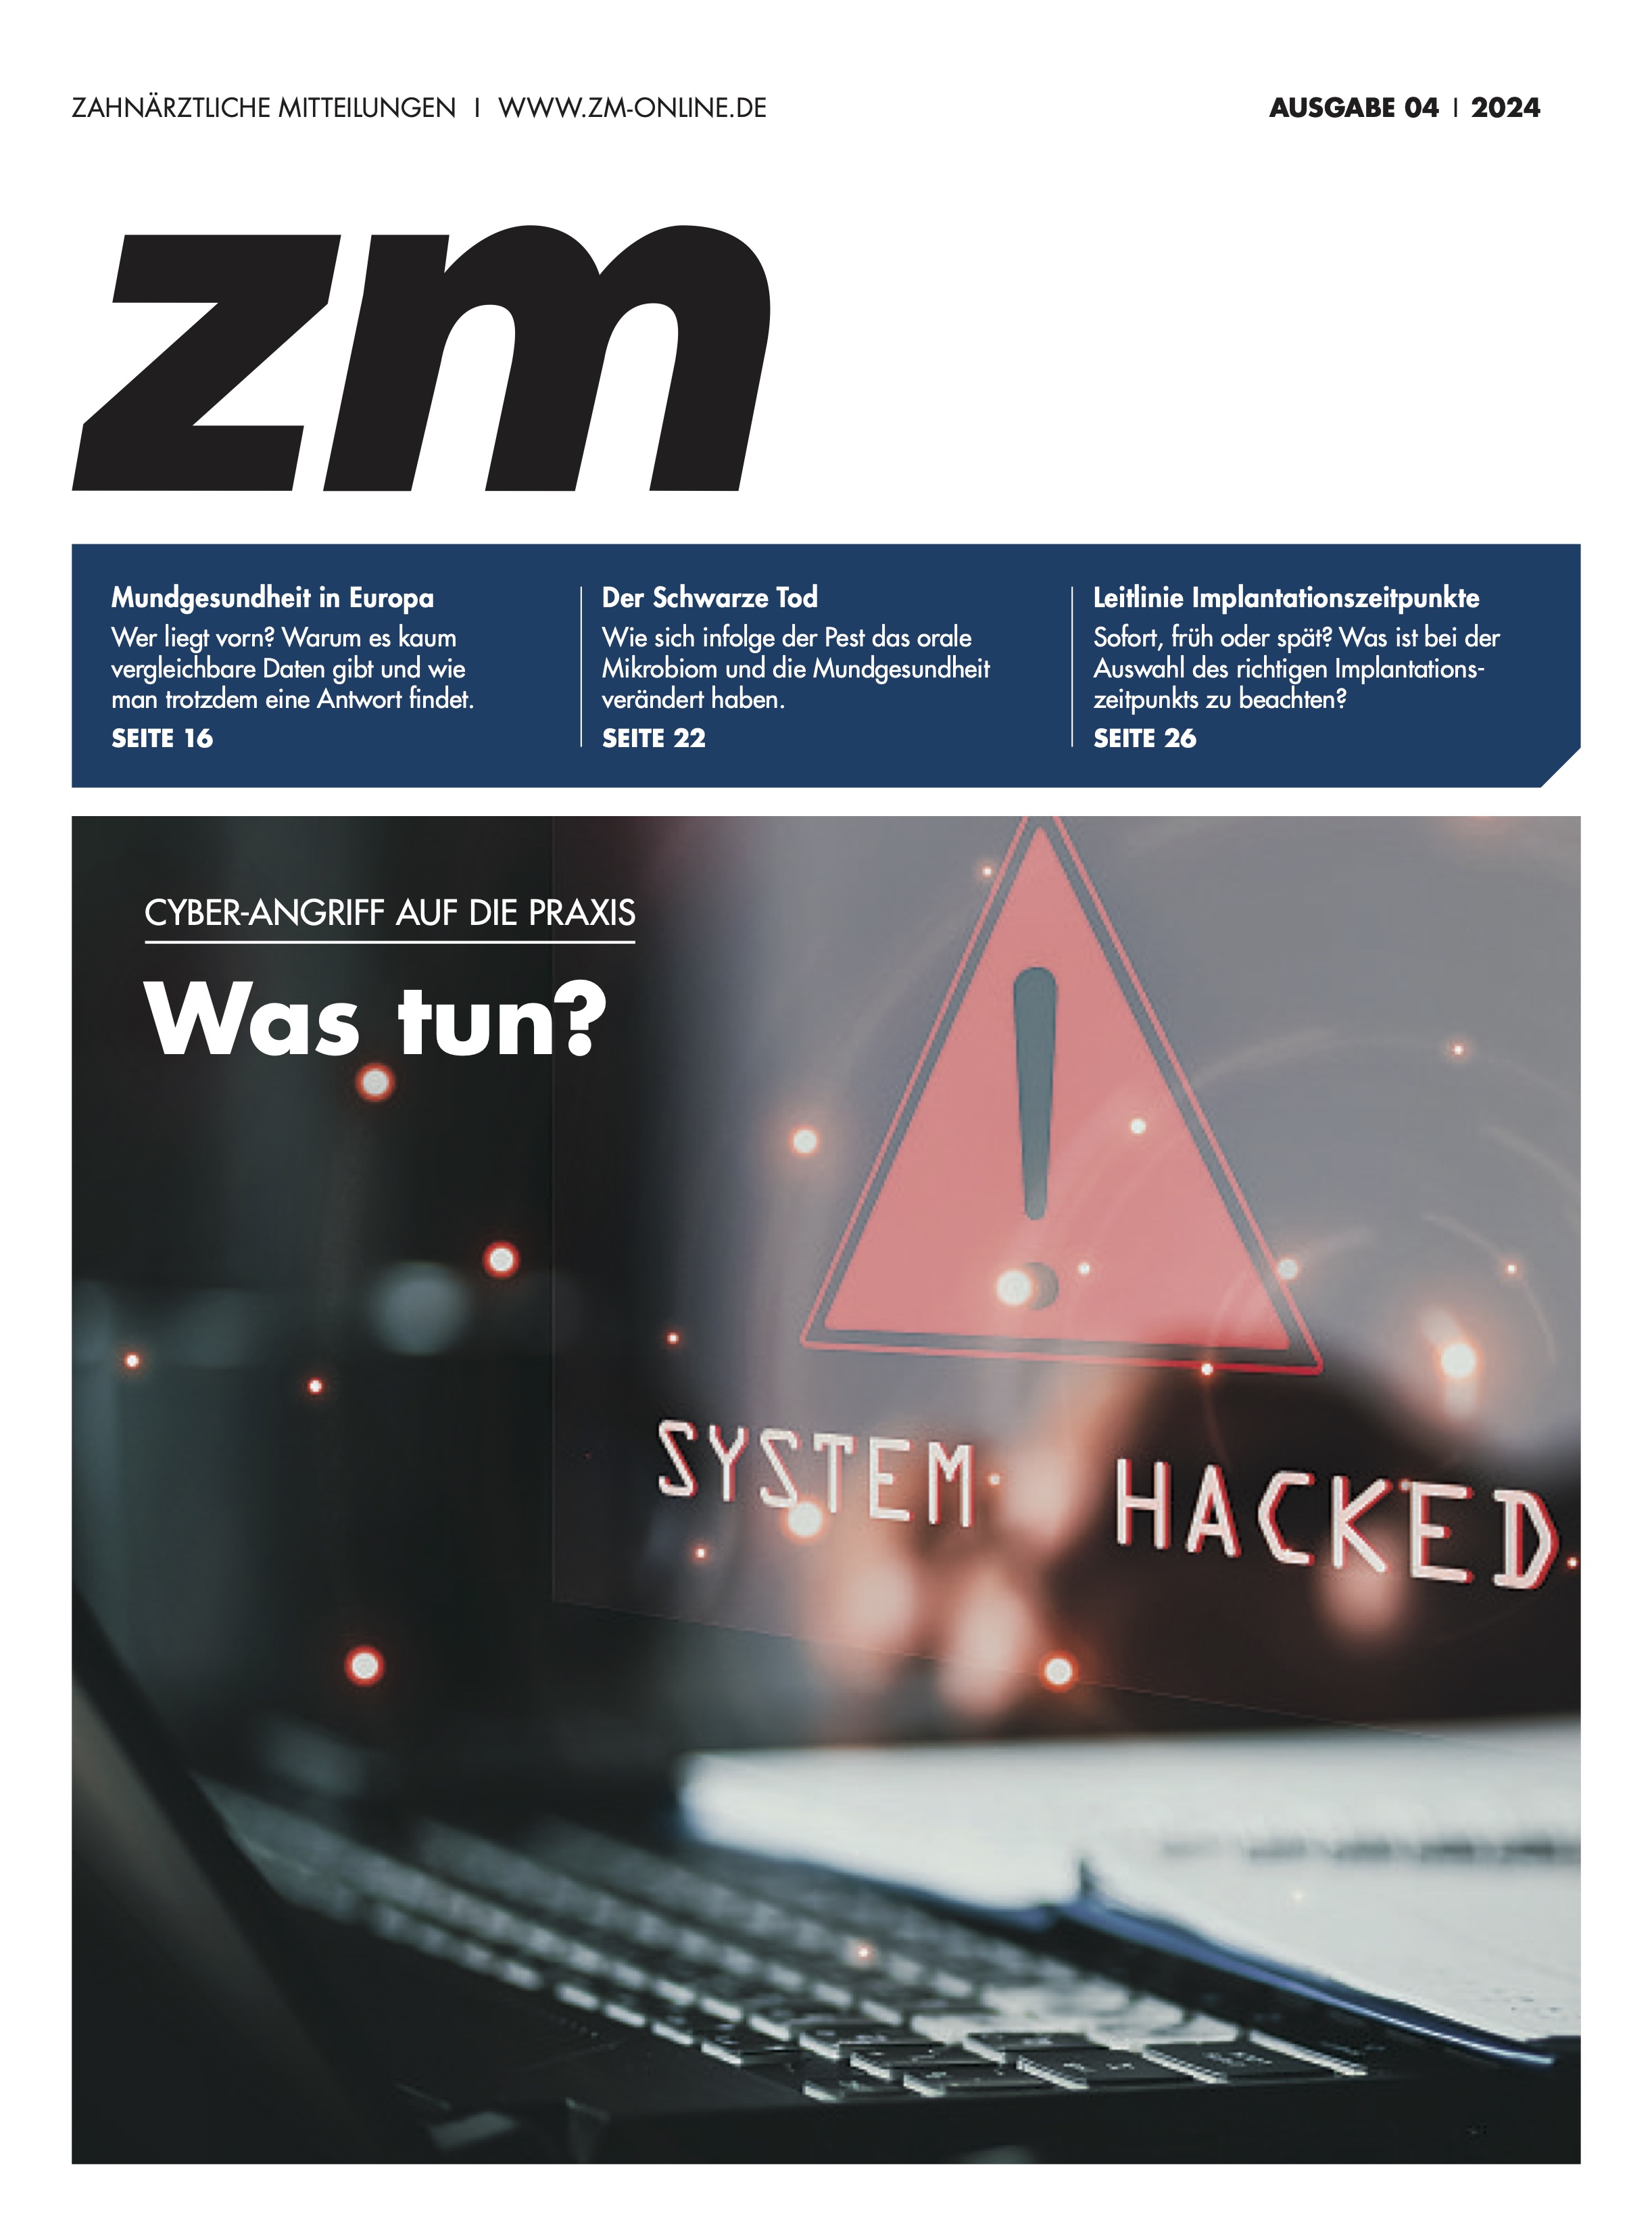 ZM - Cyberangriff auf die Praxis - Was tun?